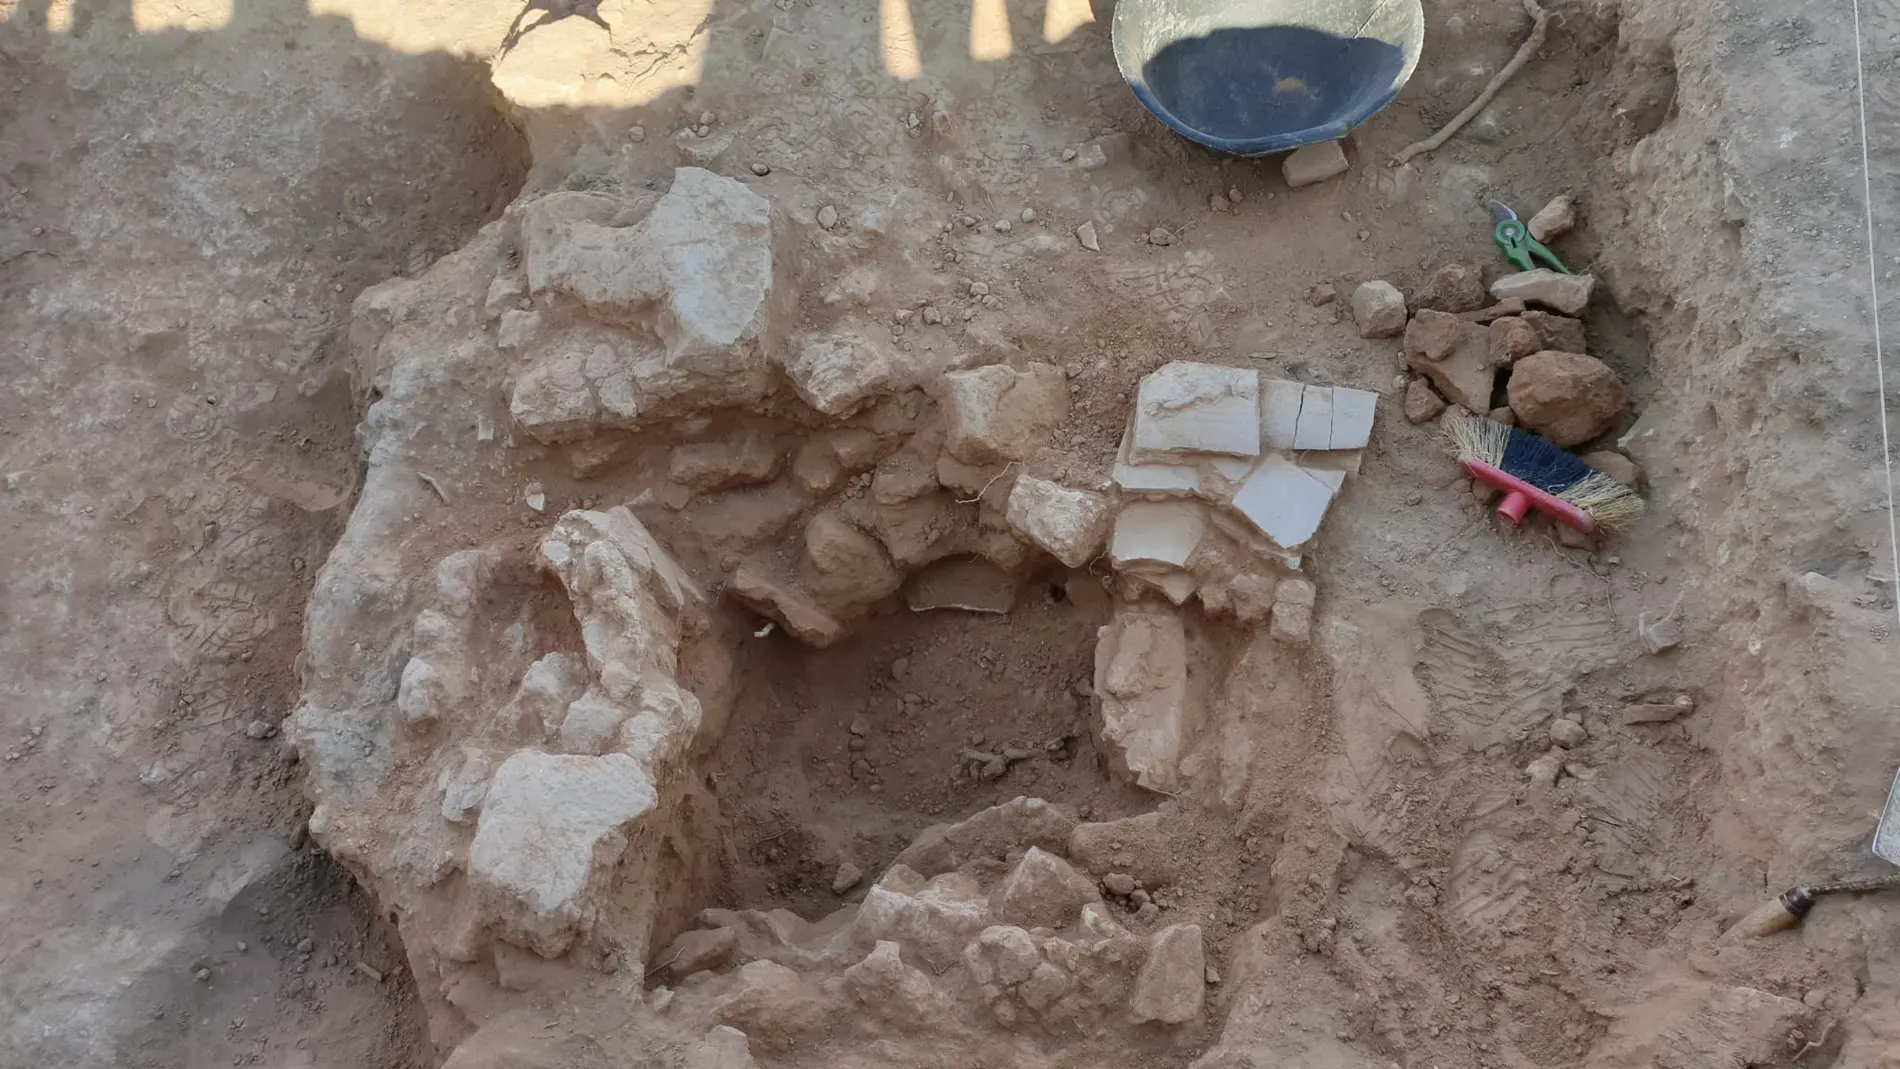 Descubierta en el yacimiento de València la Vella en Riba-roja de Túria una pieza funeraria de época romana (s.I-II dc)